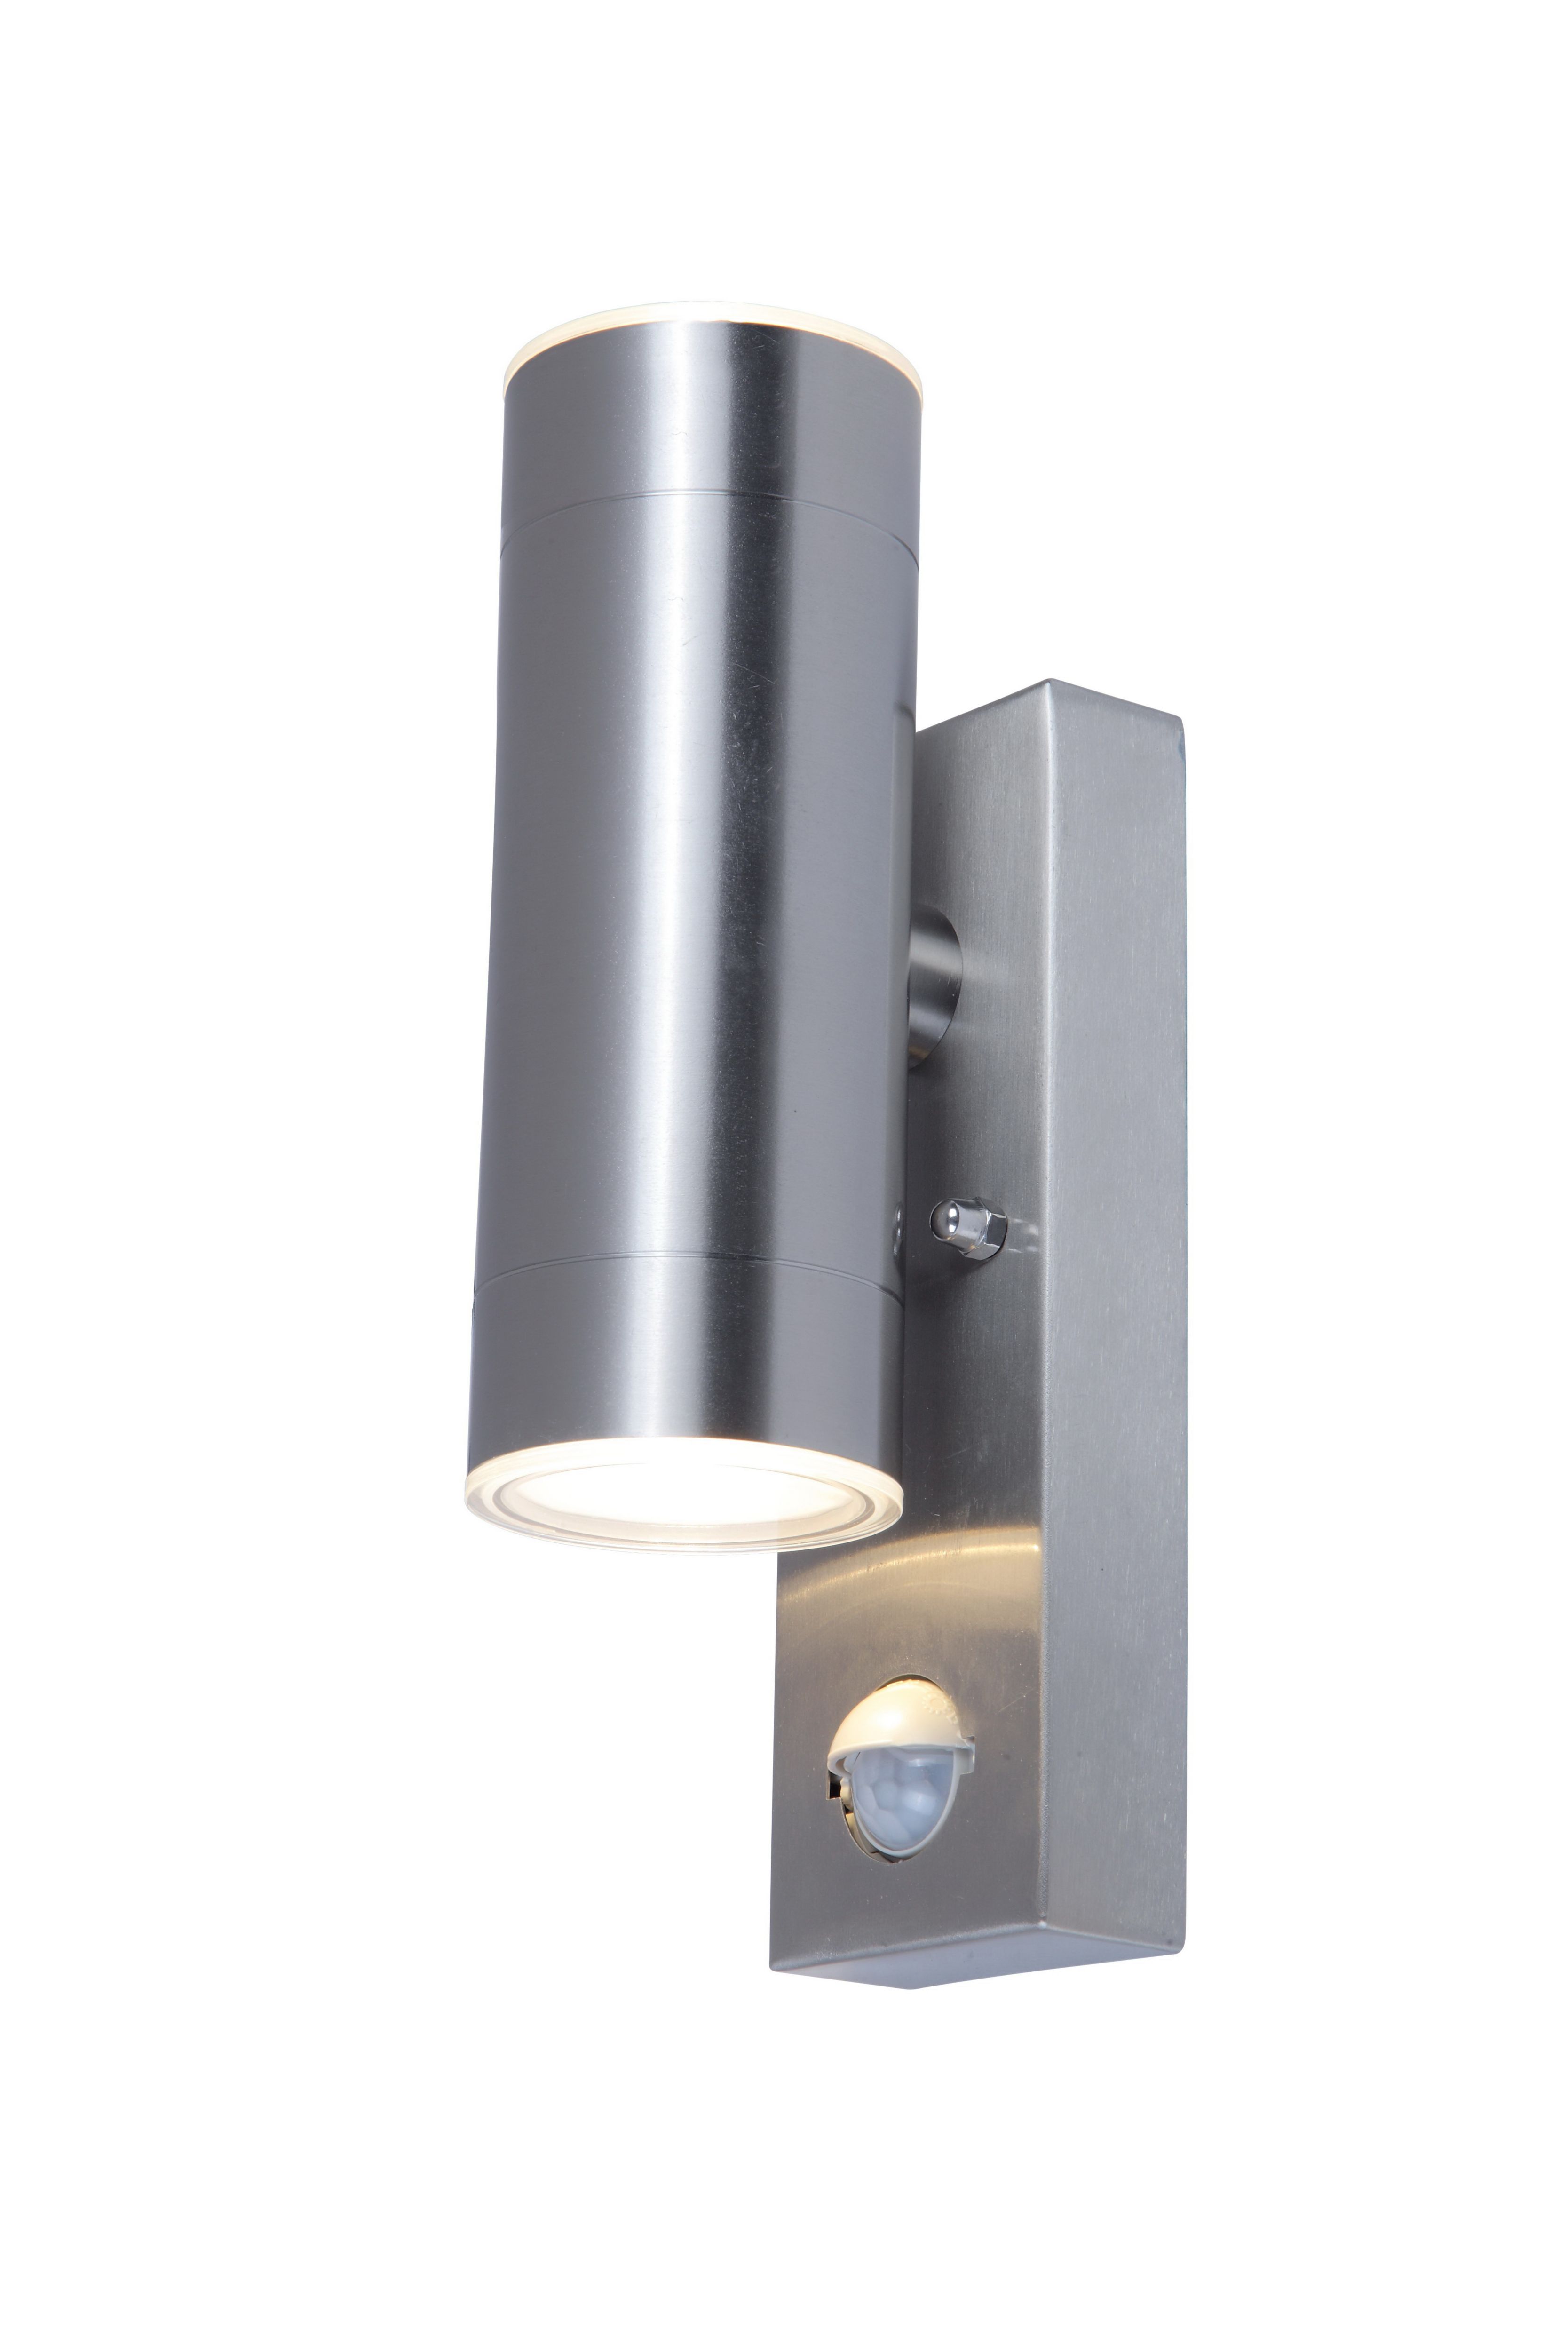 GoodHome Candiac Fixed Matt Stainless steel Integrated LED PIR Motion sensor Outdoor Wall light 9W